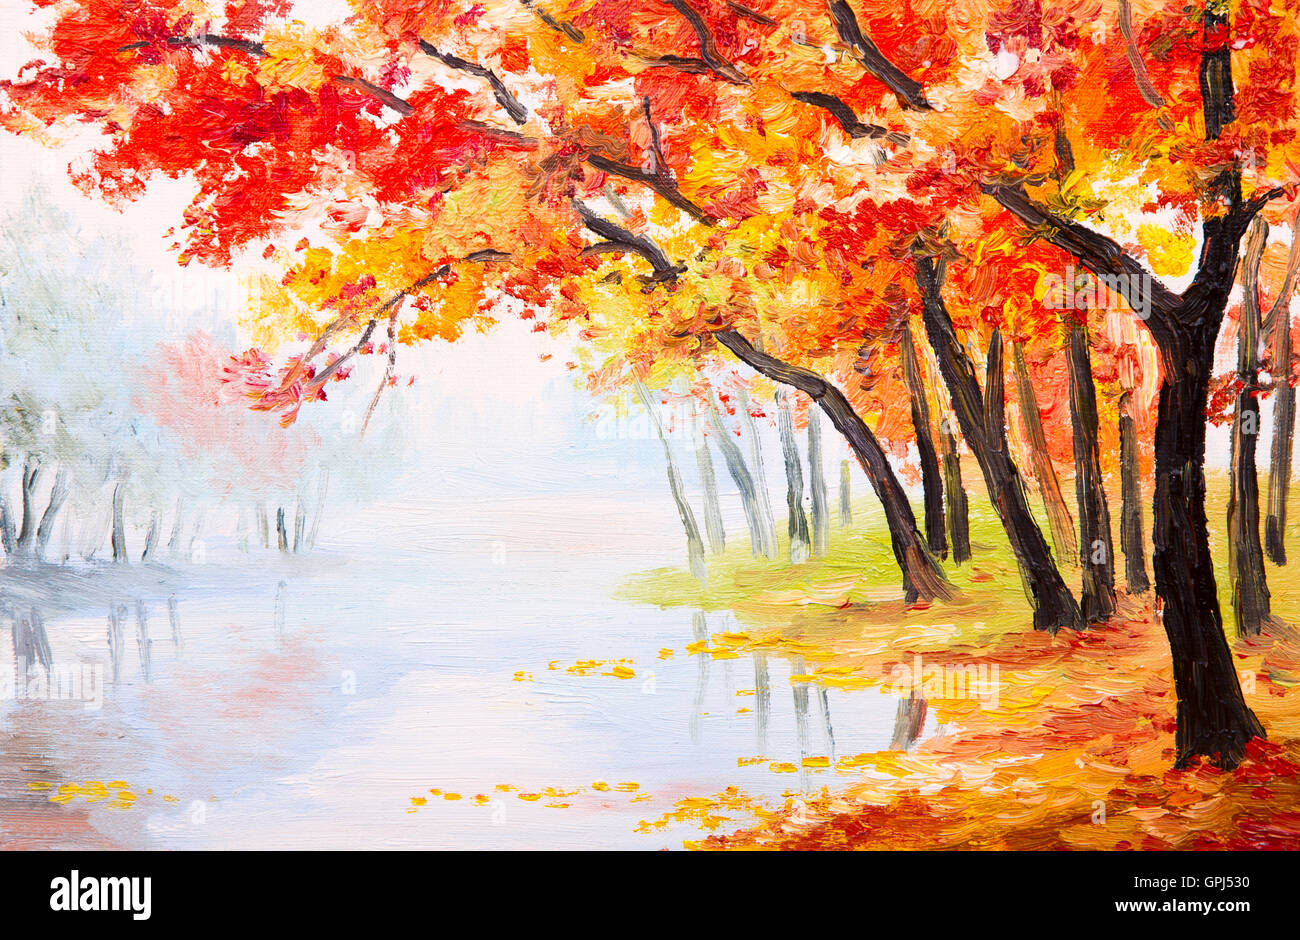 Peinture à l'huile paysage - forêt d'automne près du lac, feuilles d'oranger Banque D'Images